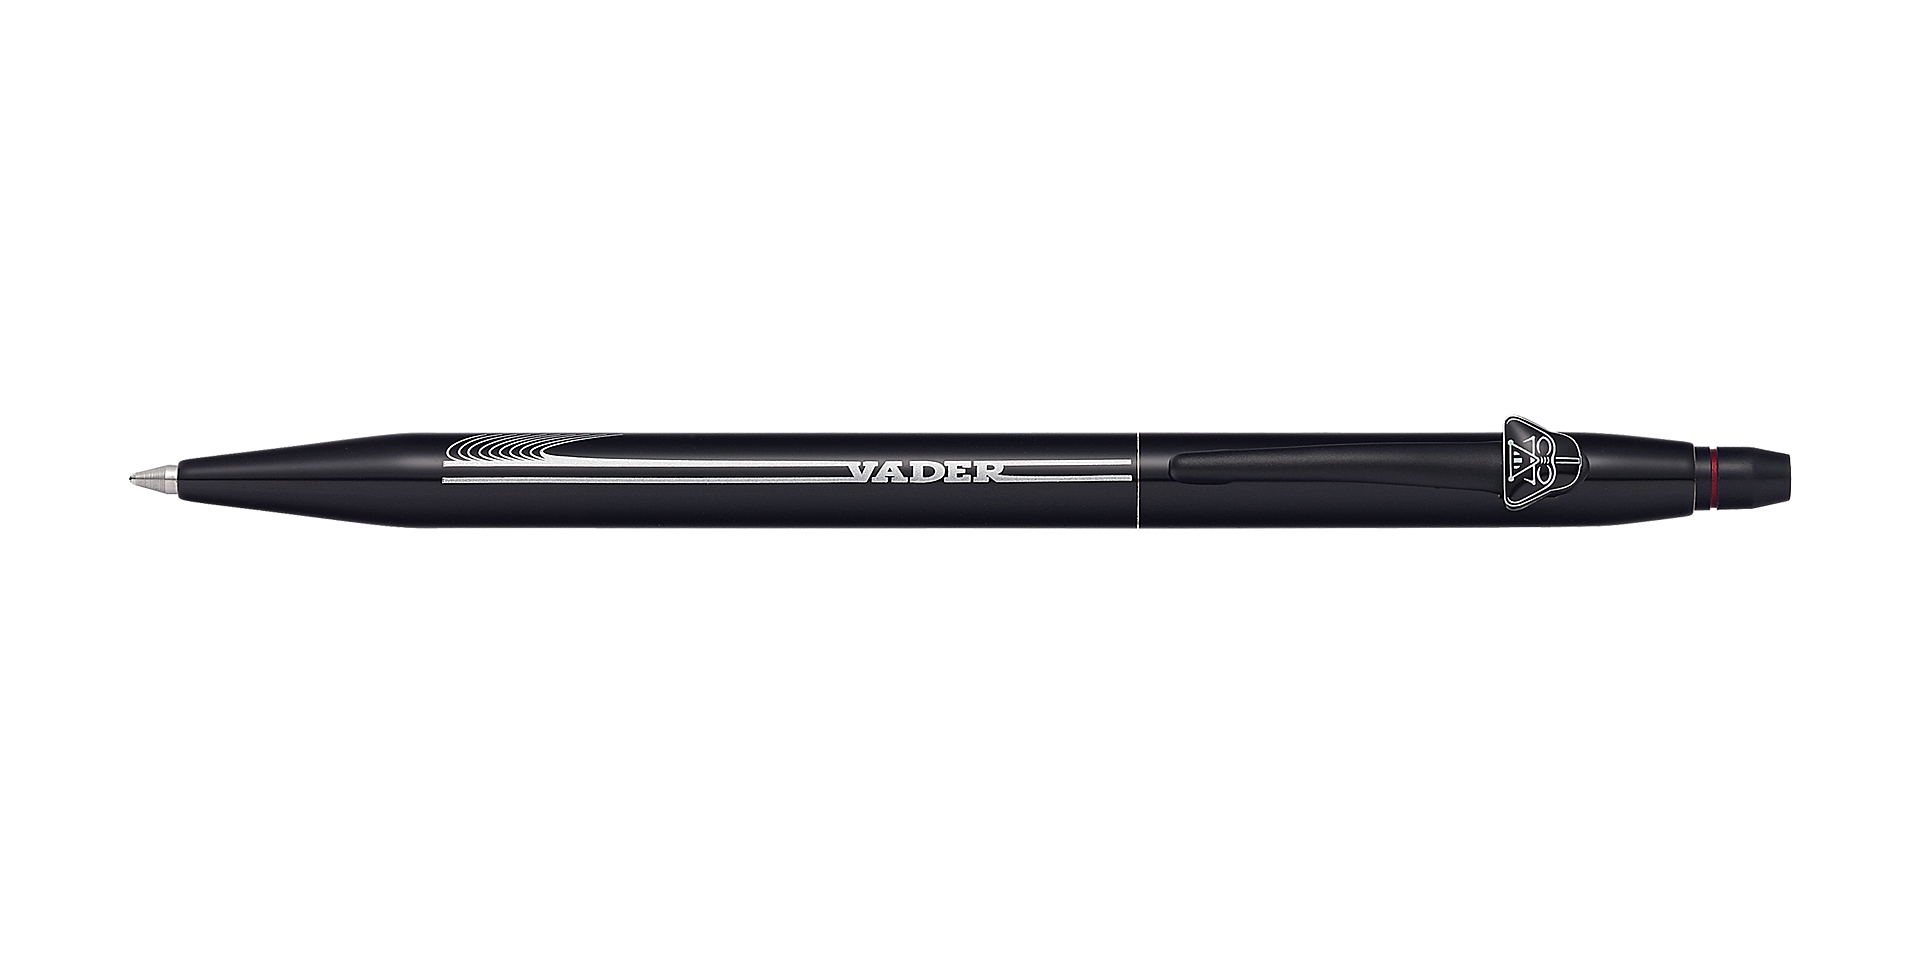  Click Star Wars® Darth Vader Gel Ink Pen